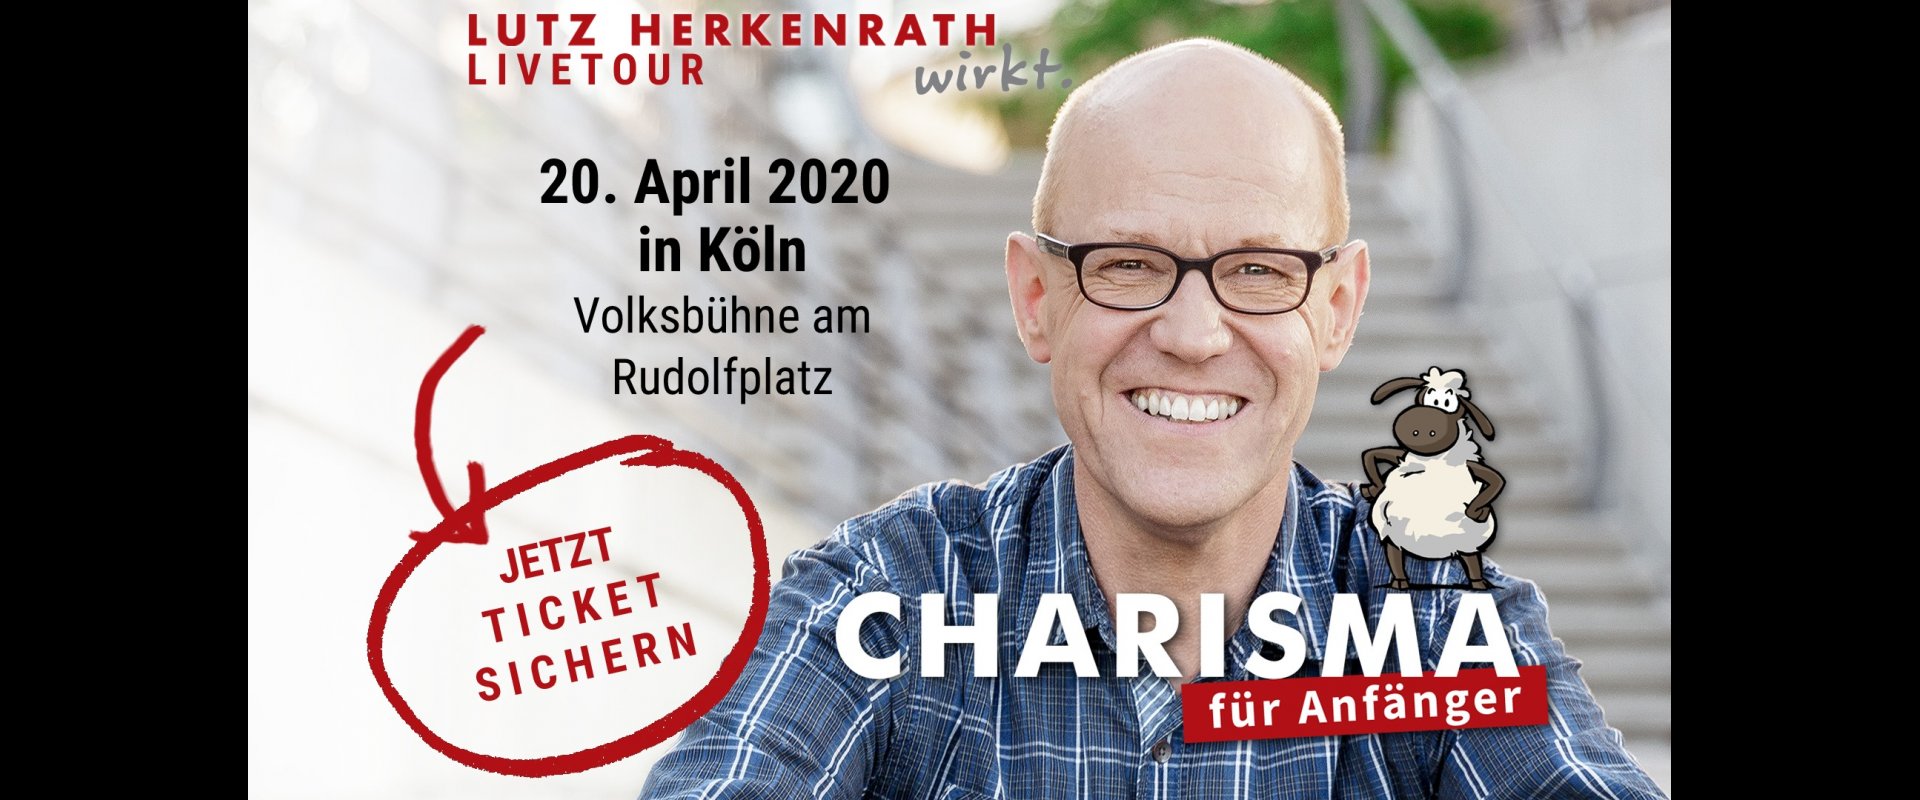 Lutz Herkenrath - Charisma für Anfänger